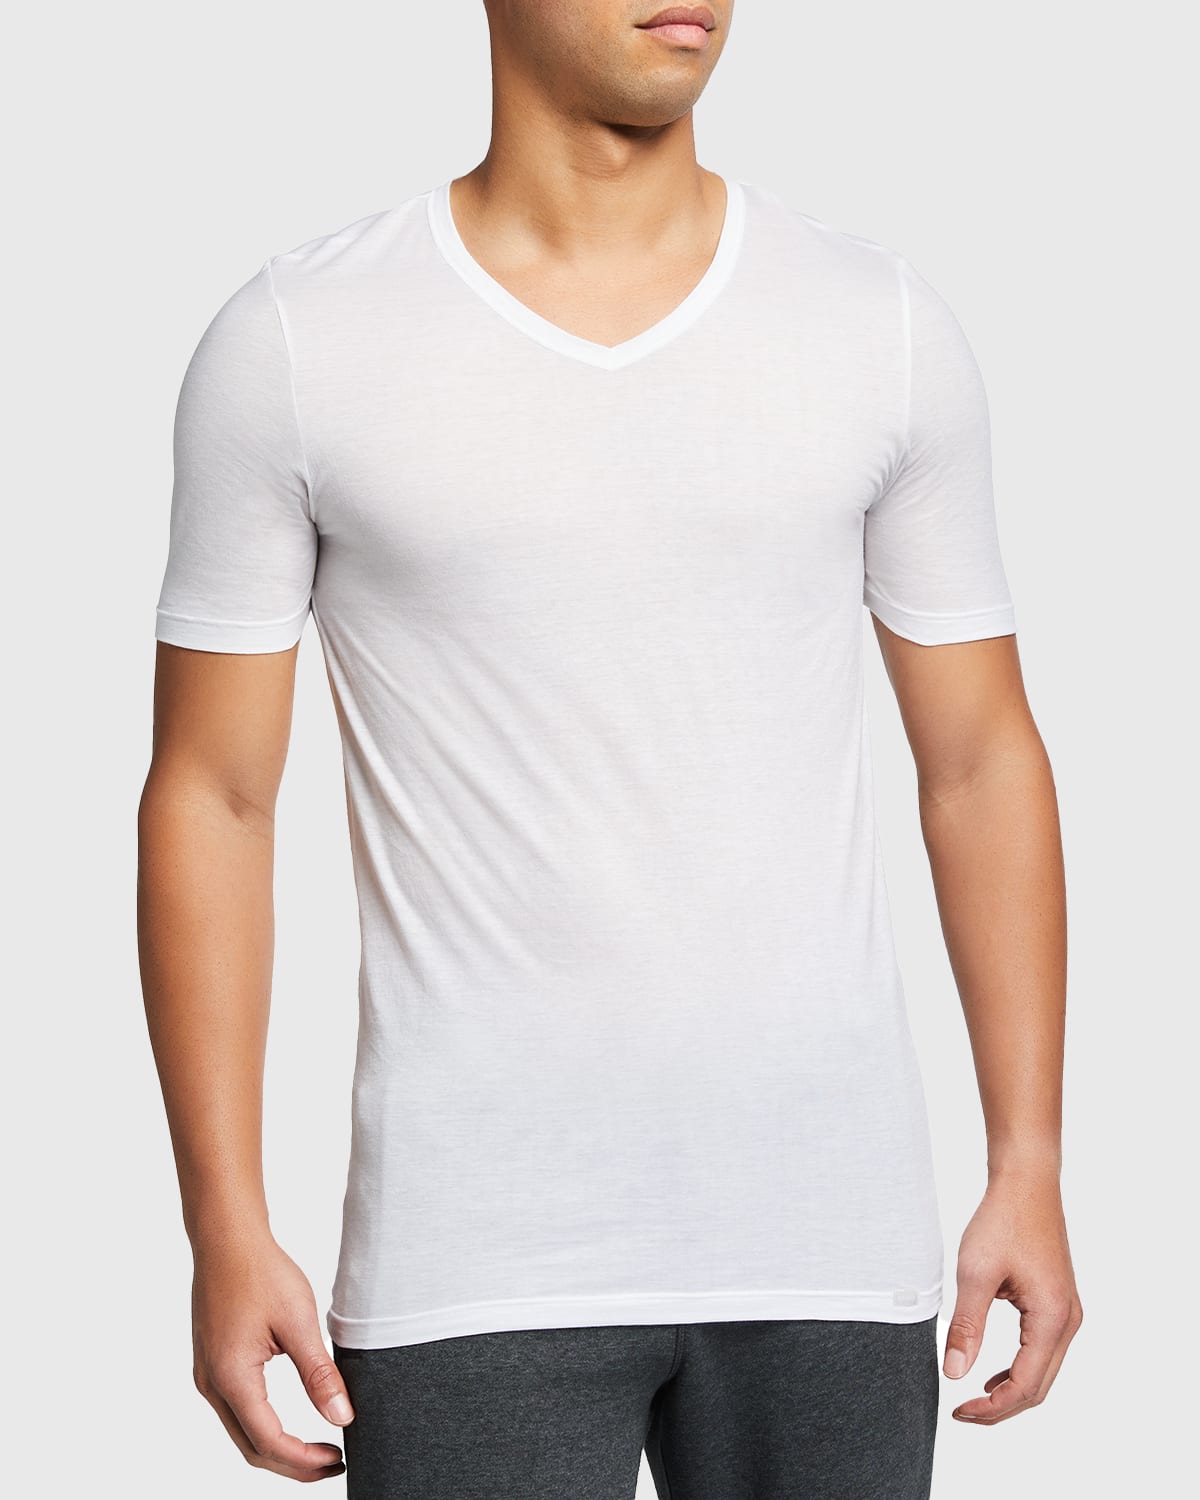 Men's Ultralight Cotton V-Neck T-Shirt